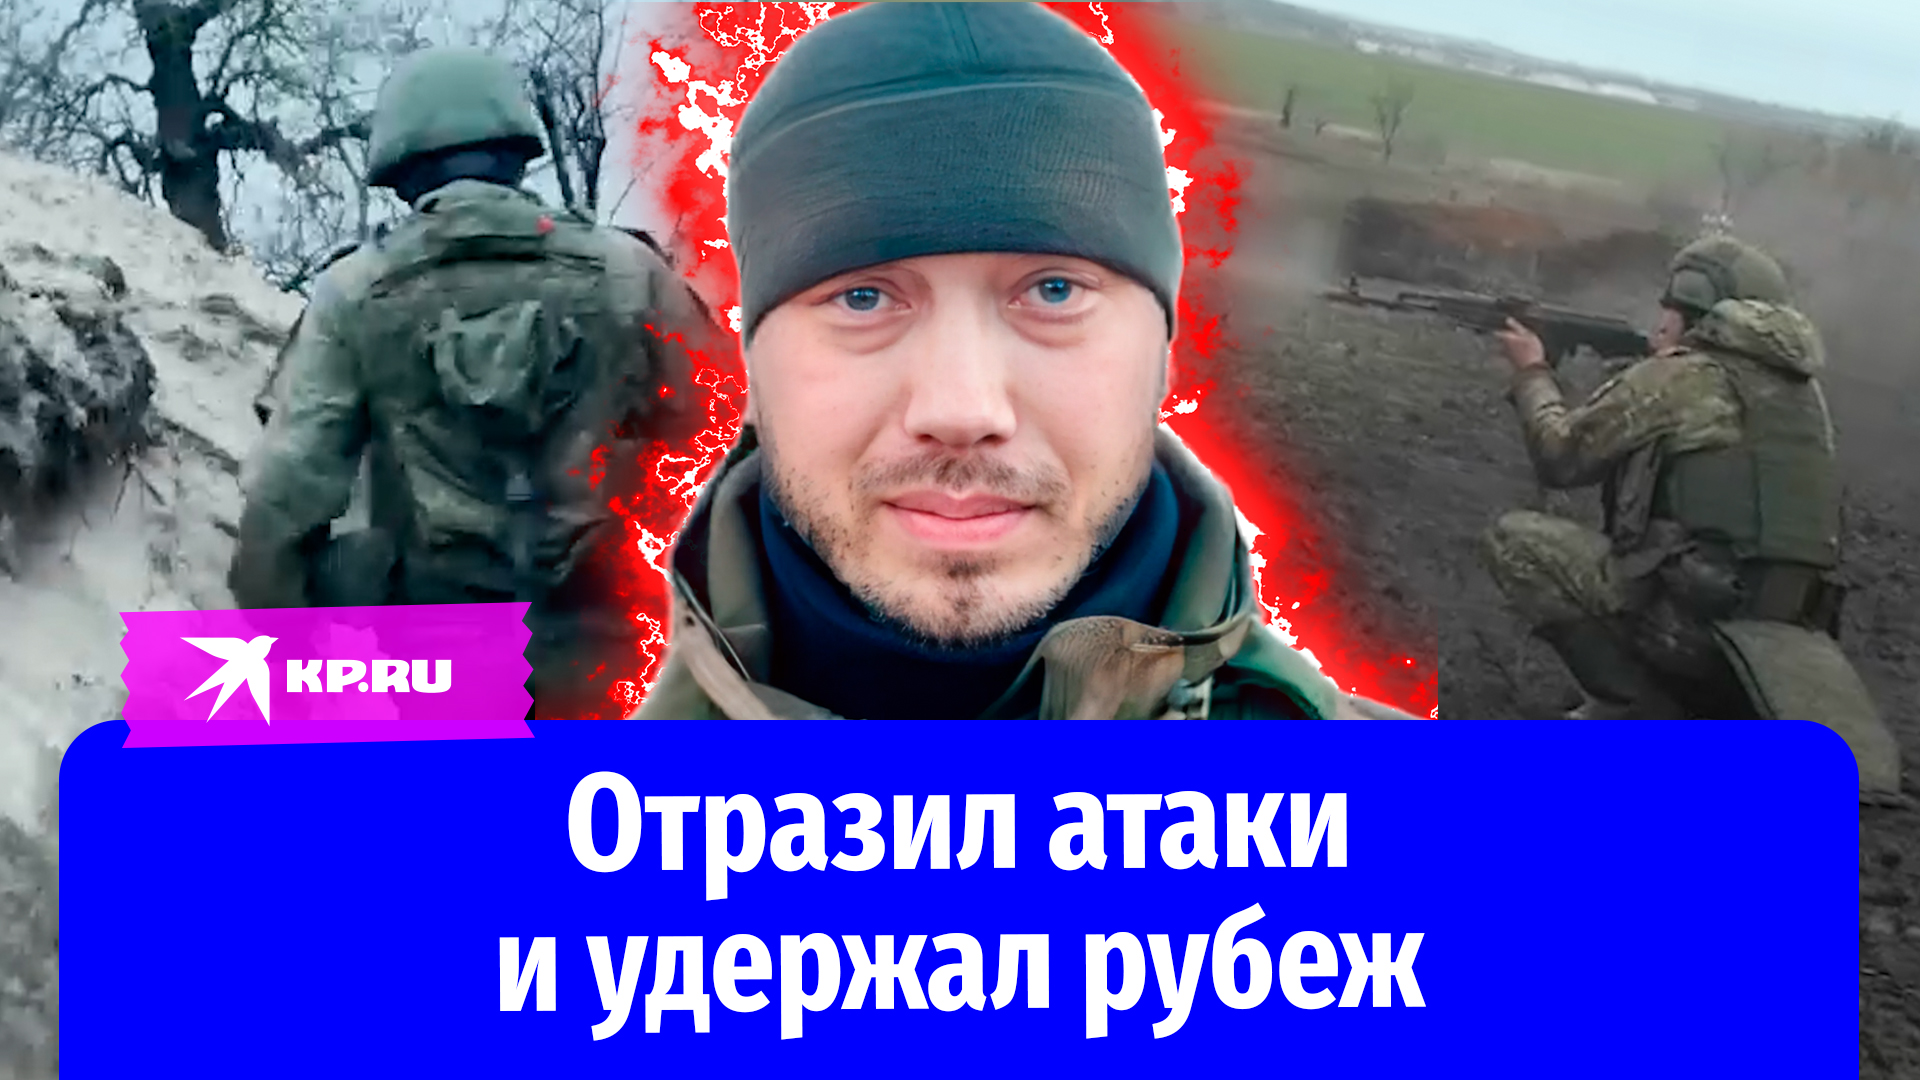 Рядовой Айрат Насыров отразил атаки и удержал рубеж